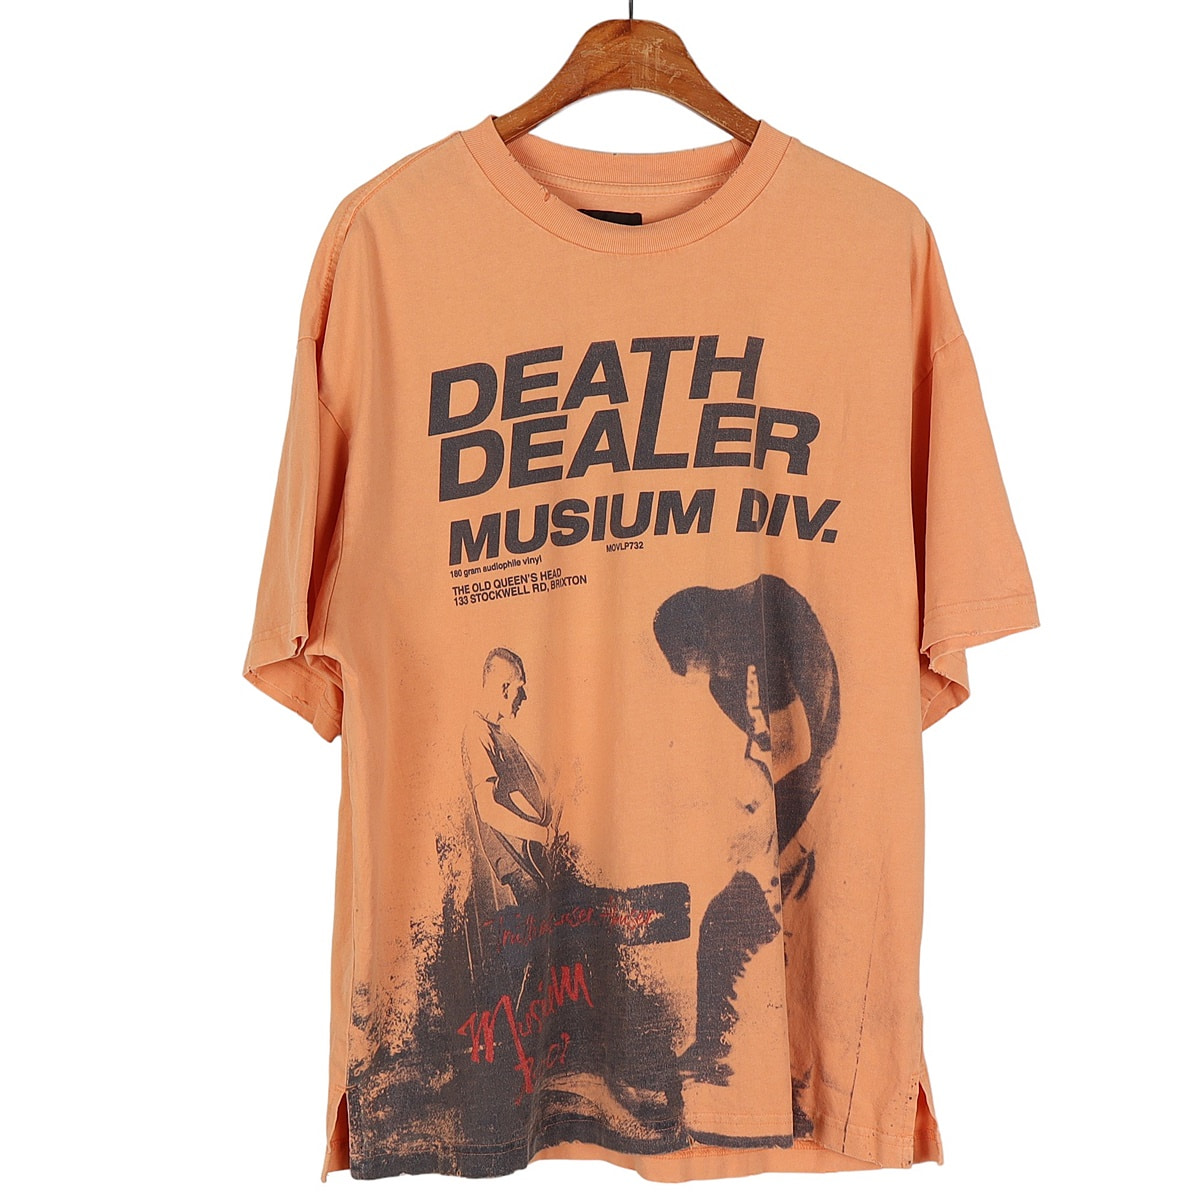 뮤지엄디브(MUSIUM DIV.) 디스트로이드 반팔 티셔츠 / 44